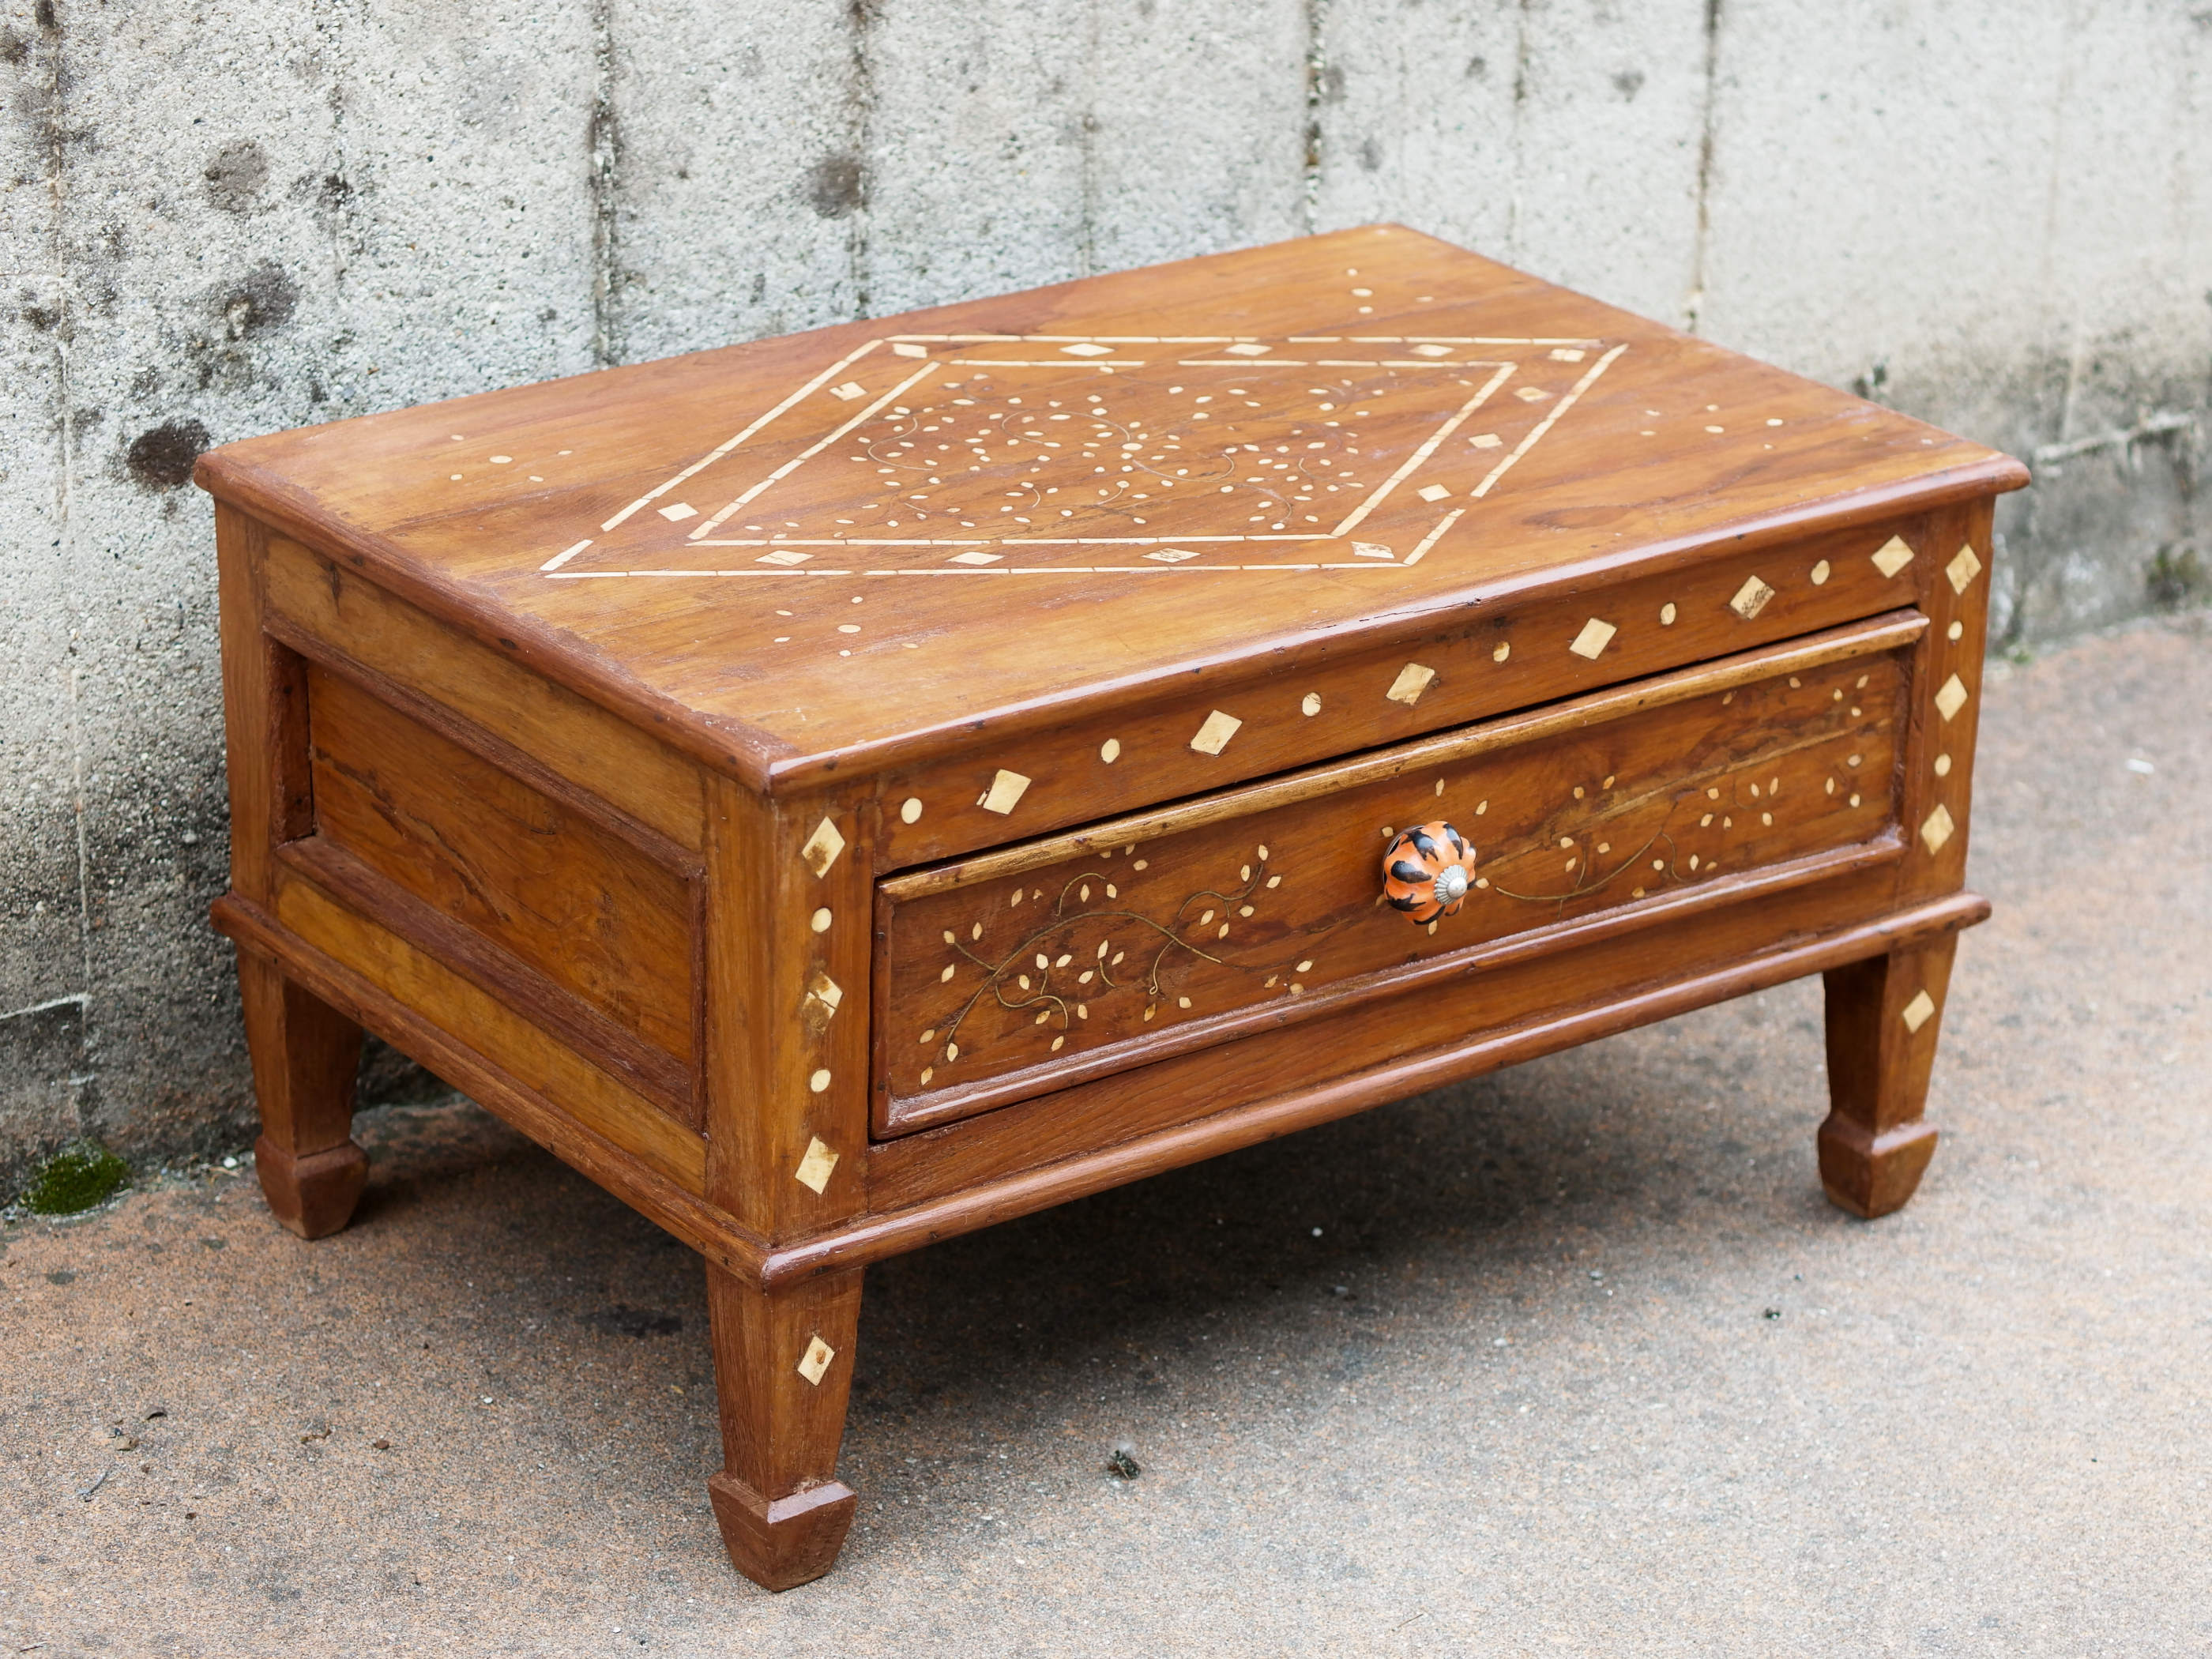 Tavolino Indiano con cassetto, in legno di teak con intarsi in osso. Pezzo unico di finitura artigianale .  Dimensioni 61x40 h34cm